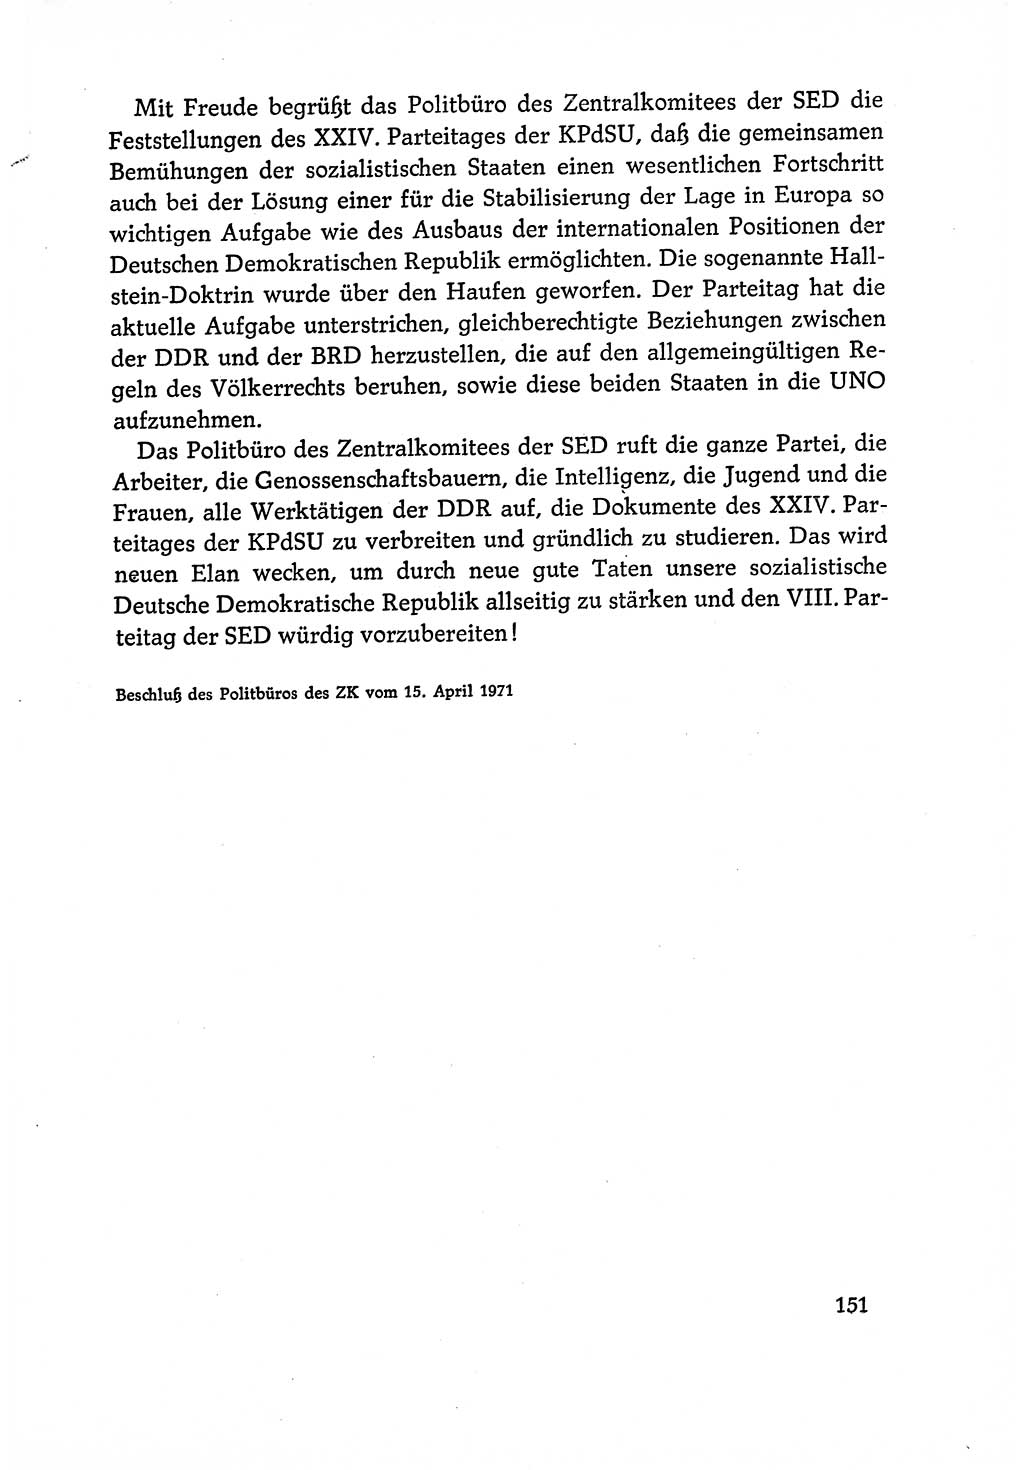 Dokumente der Sozialistischen Einheitspartei Deutschlands (SED) [Deutsche Demokratische Republik (DDR)] 1970-1971, Seite 151 (Dok. SED DDR 1970-1971, S. 151)